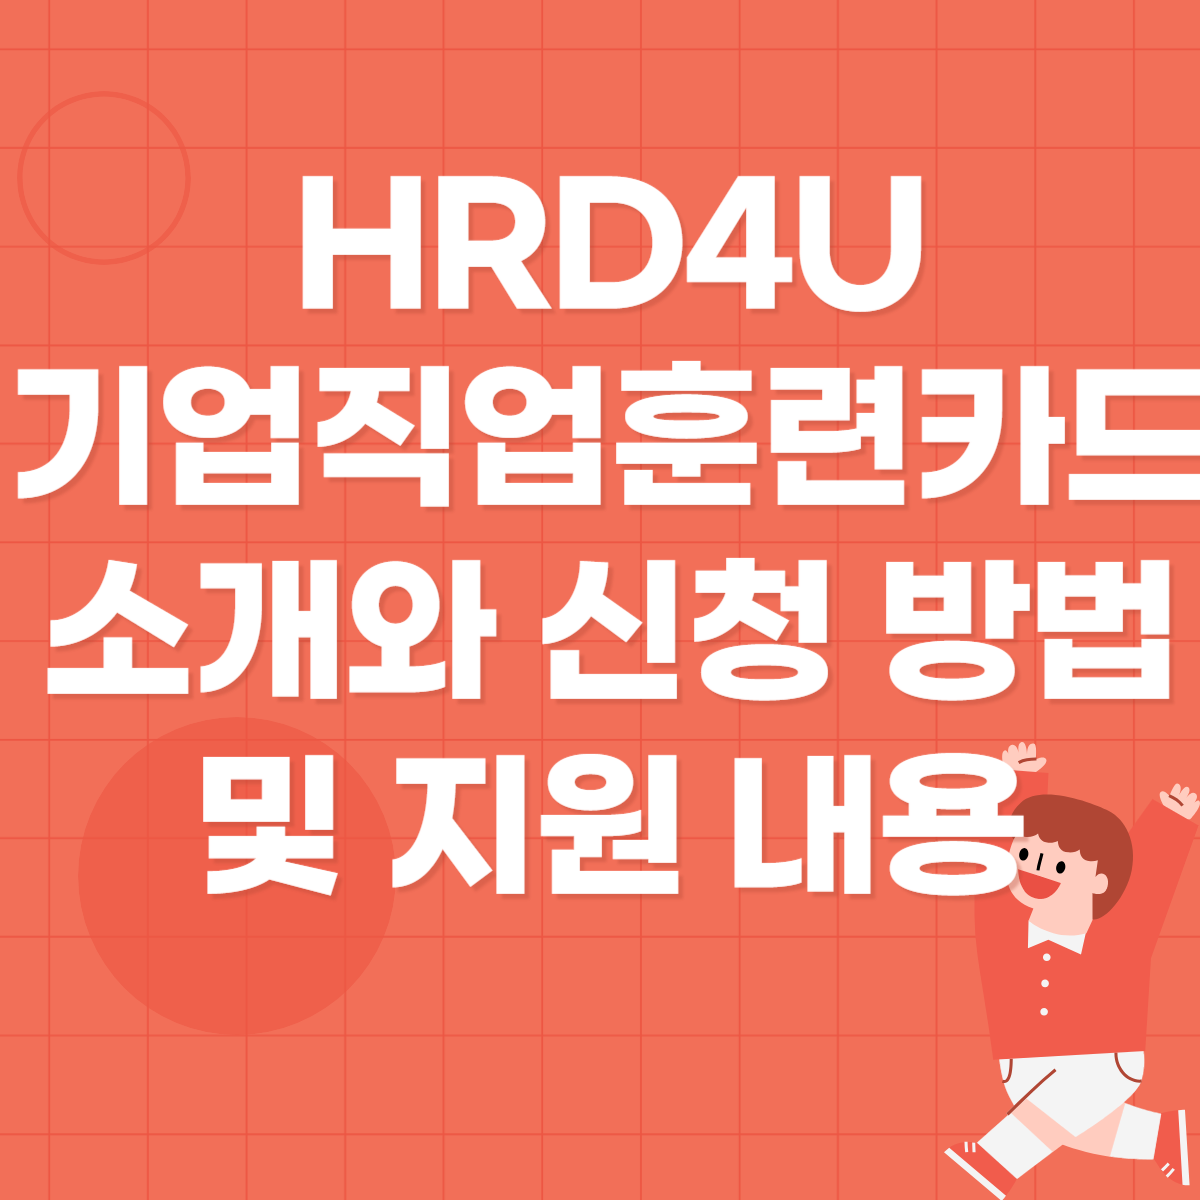 HRD4U 기업직업훈련카드 소개와 신청 방법 및 지원 내용